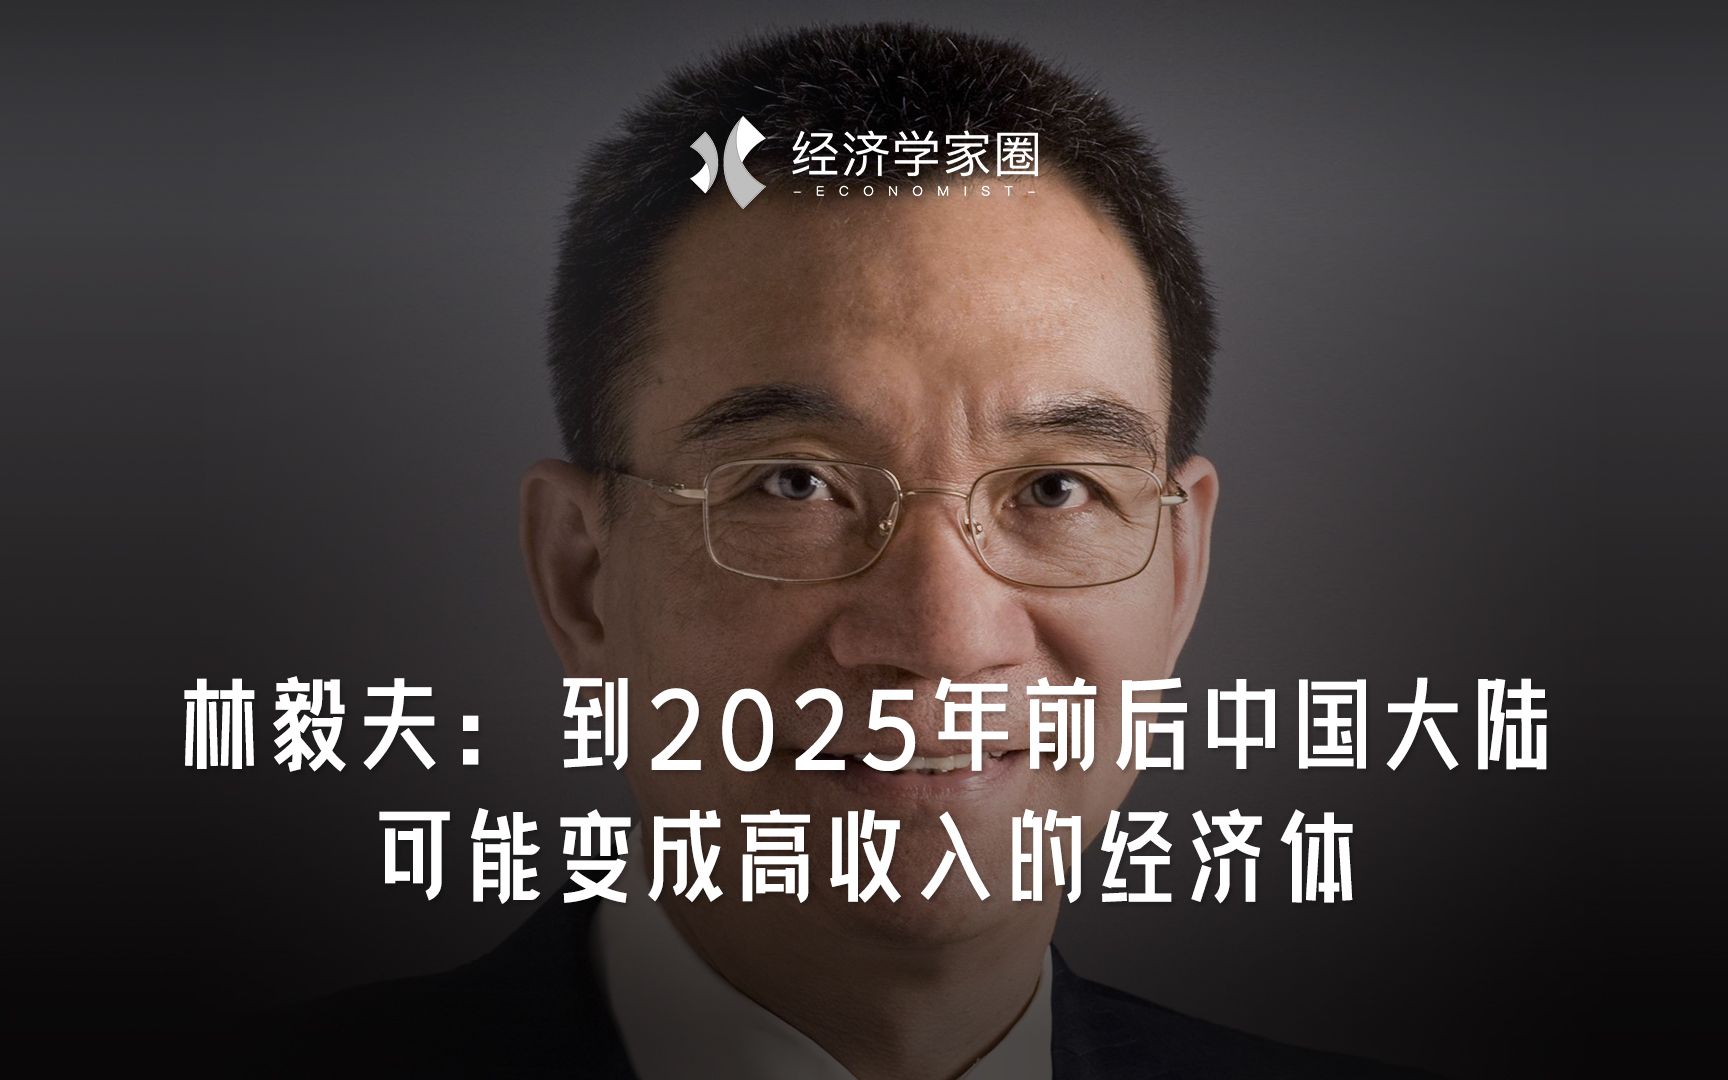 林毅夫：到2025年前后 中国大陆可能变成高收入的经济体